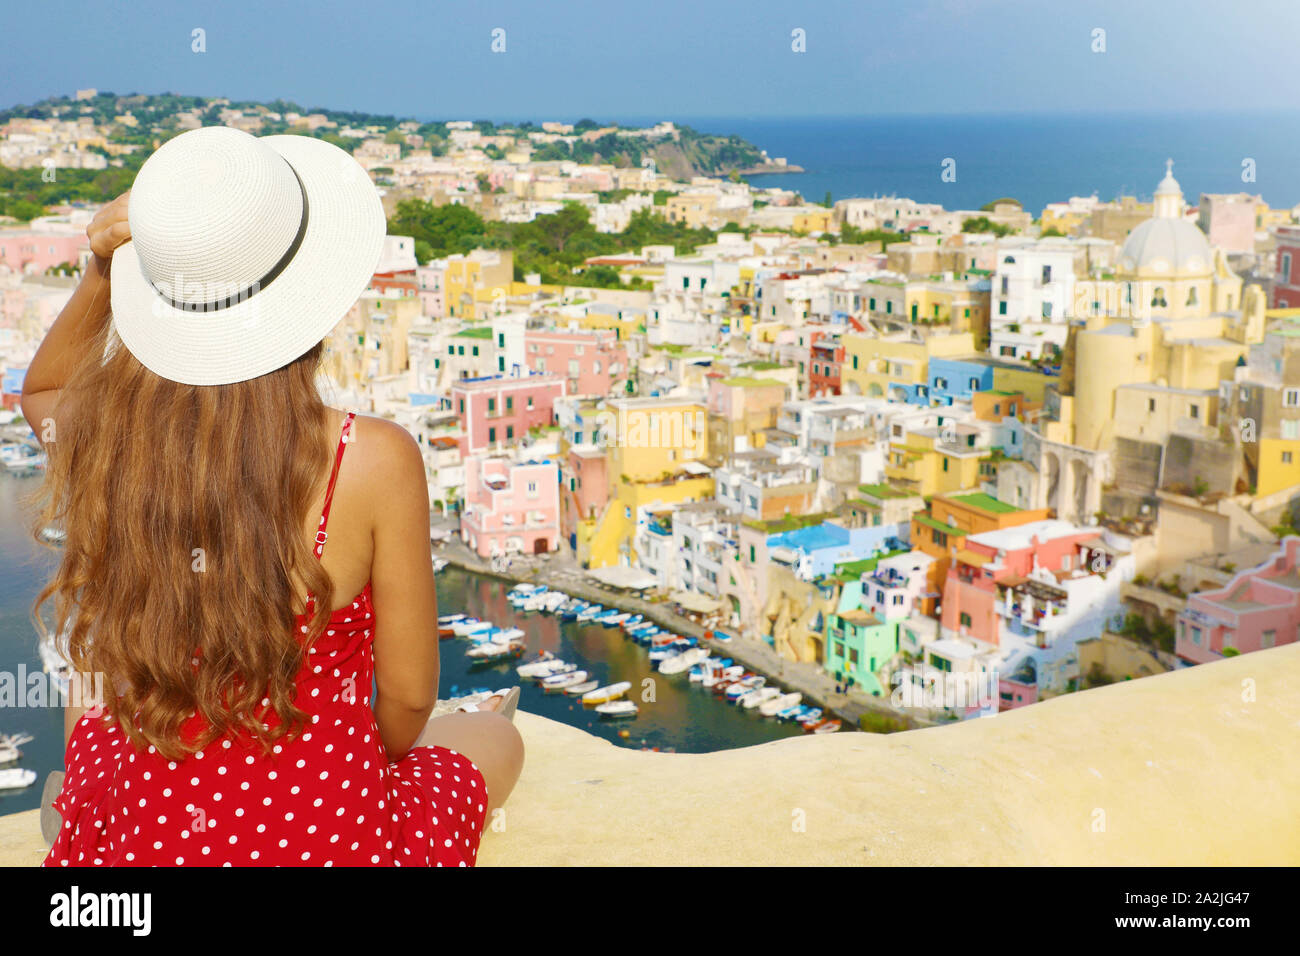 Vacances en Italie. Vue arrière de Beautiful Girl with hat sur le mur à la vue imprenable sur l'île de Procida, Naples, Italie. Banque D'Images